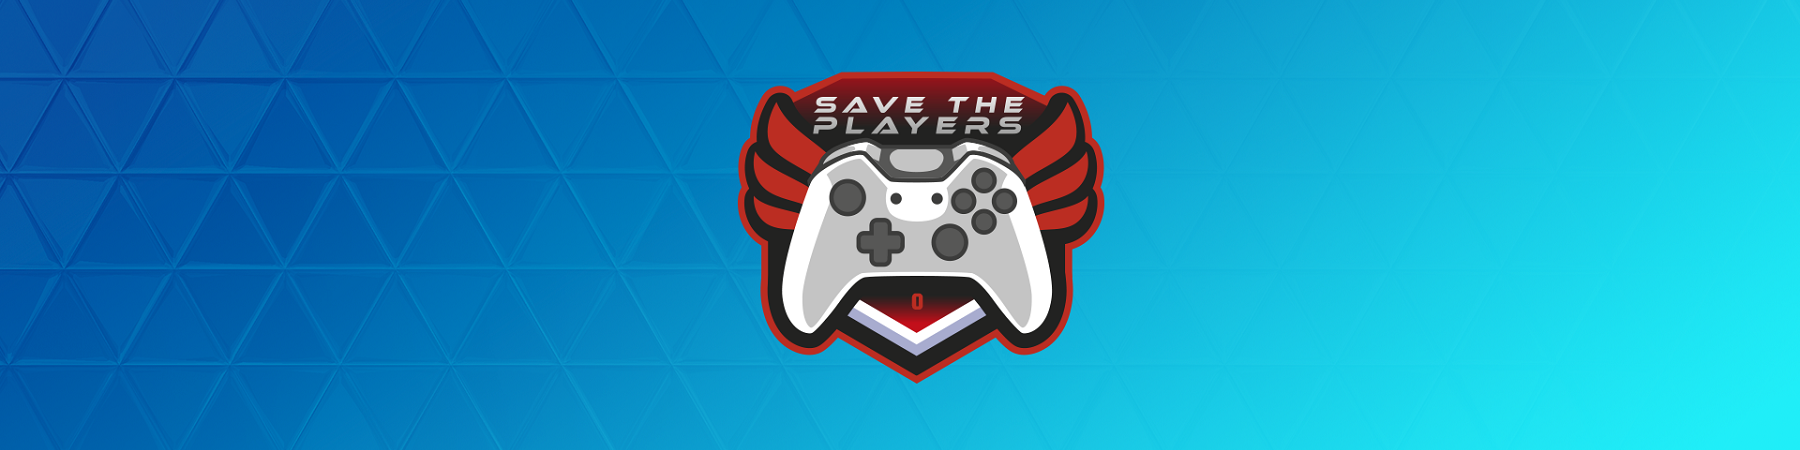 Immagine ufficiale dell evento save the players, maratona di gaming